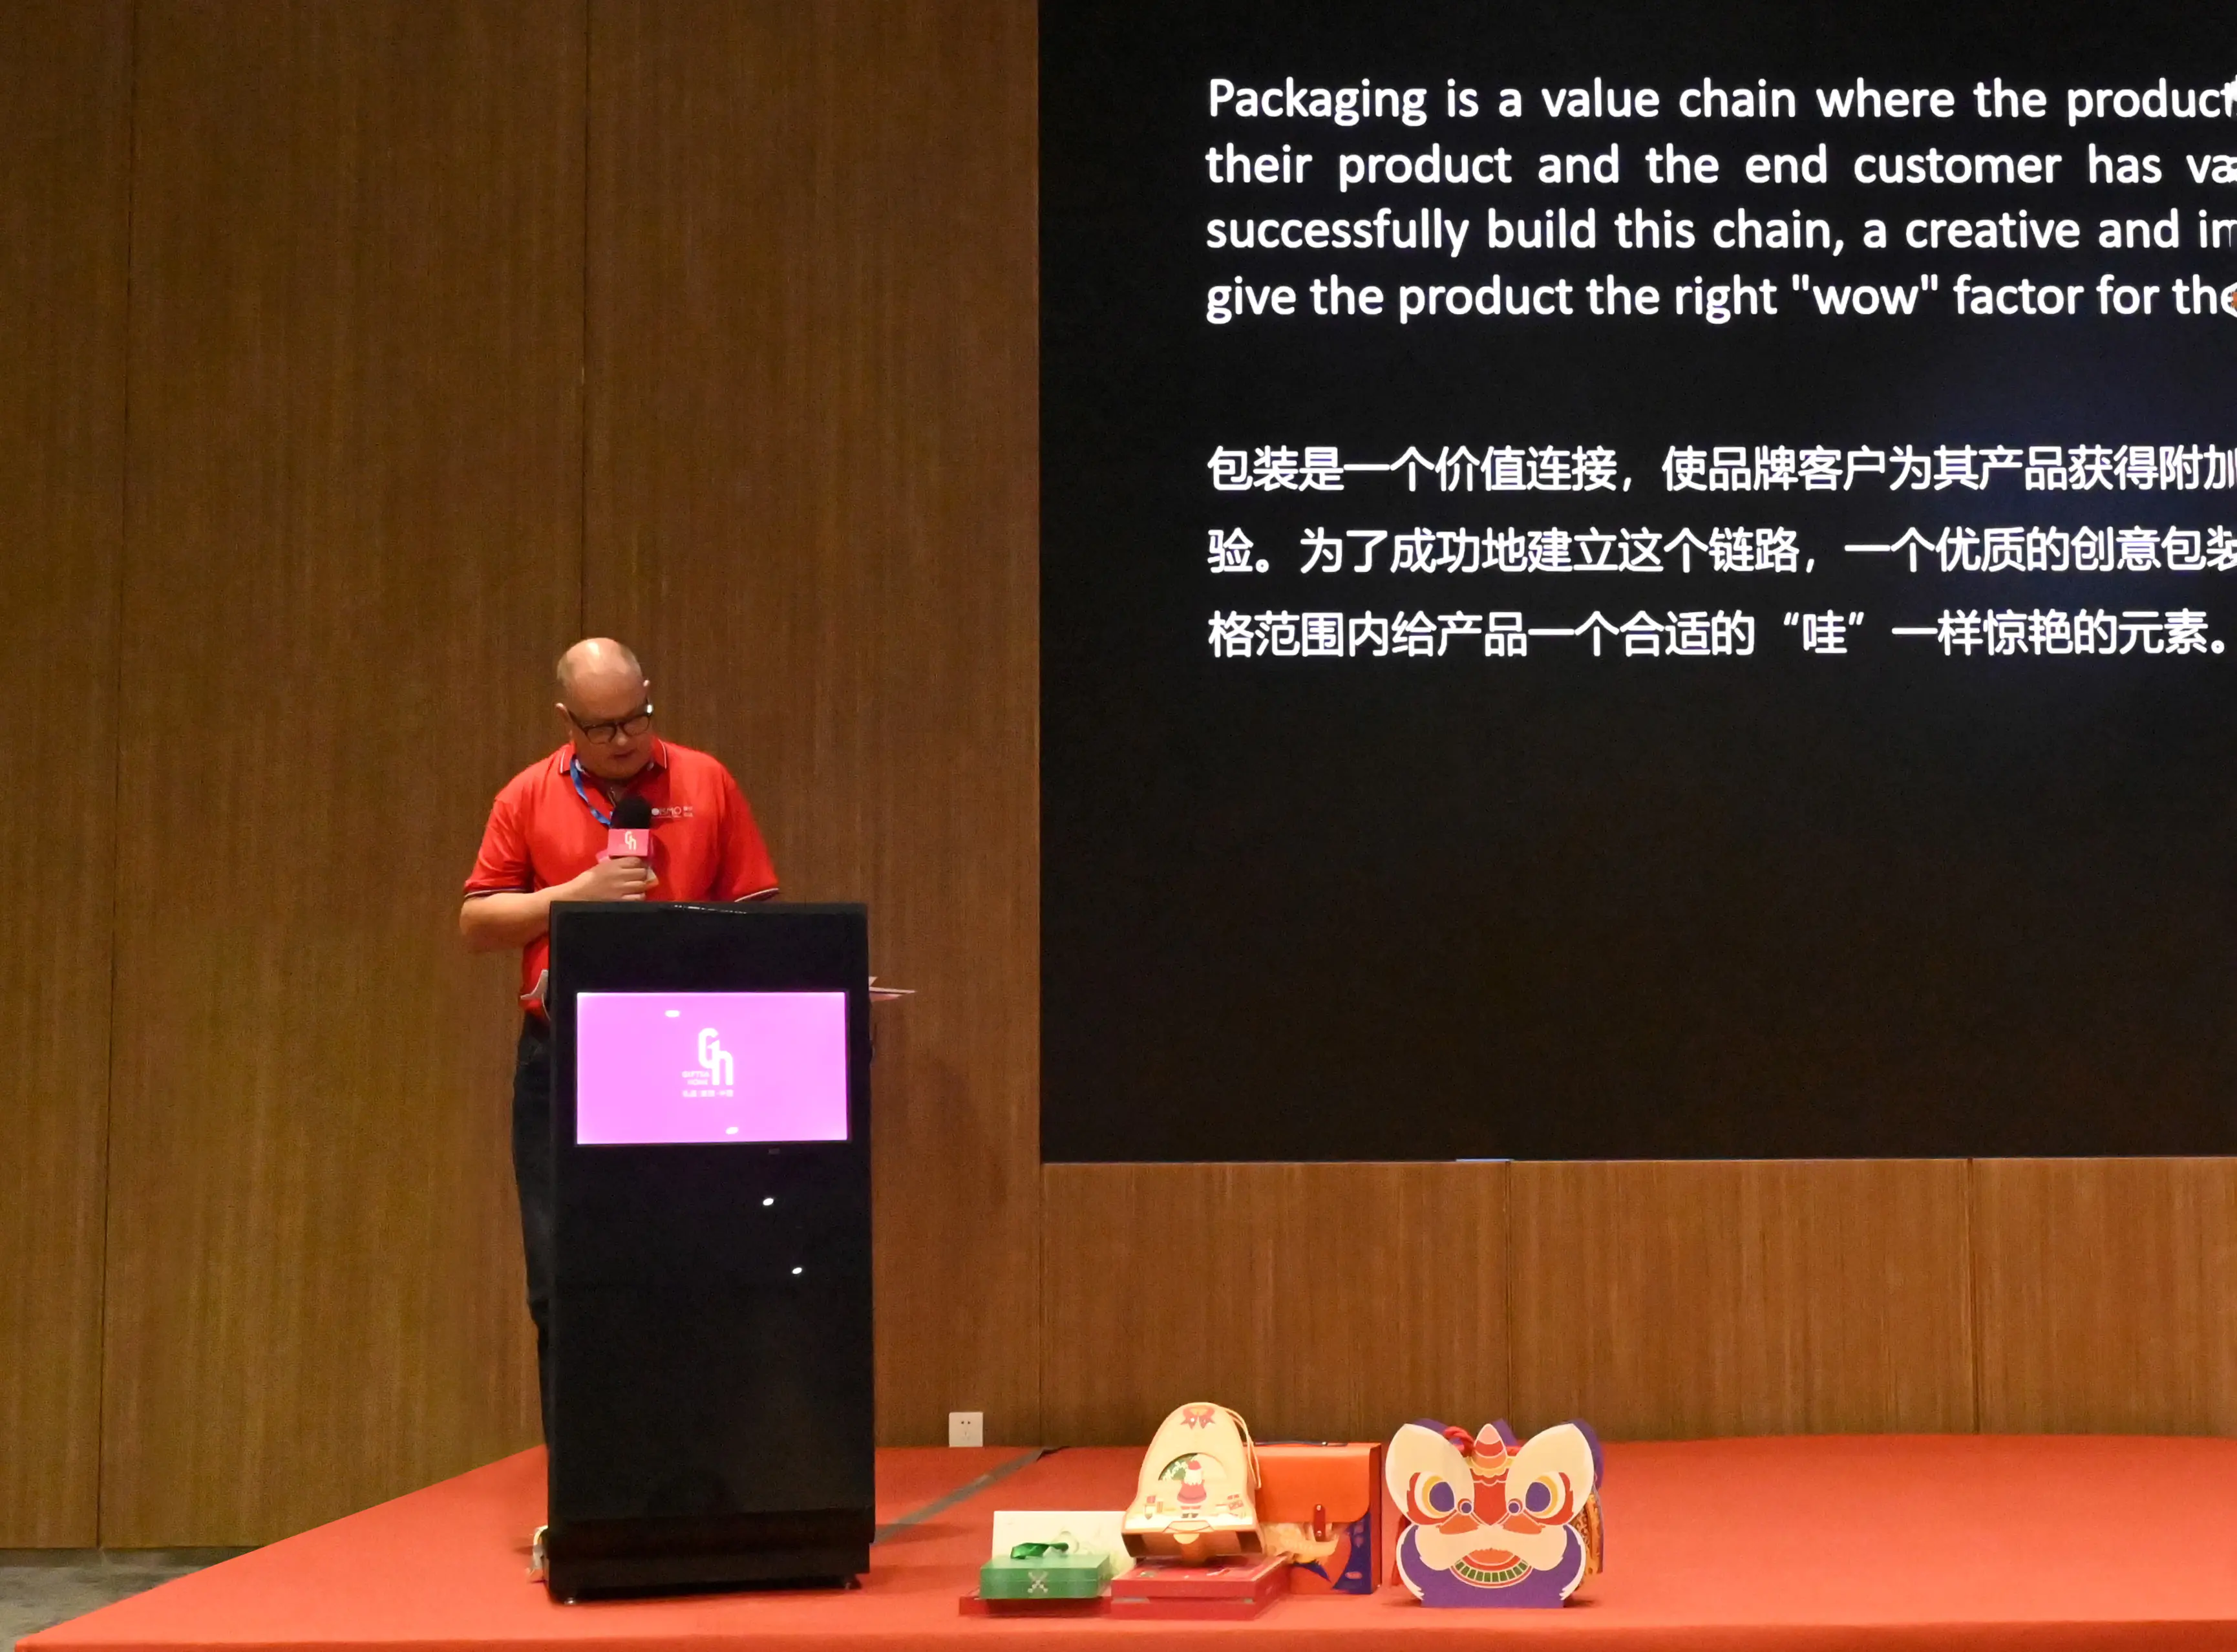 Govor izvršnog direktora SEISMO-a na sajmu u Shenzhenu o kreativnom dizajnu ambalaže